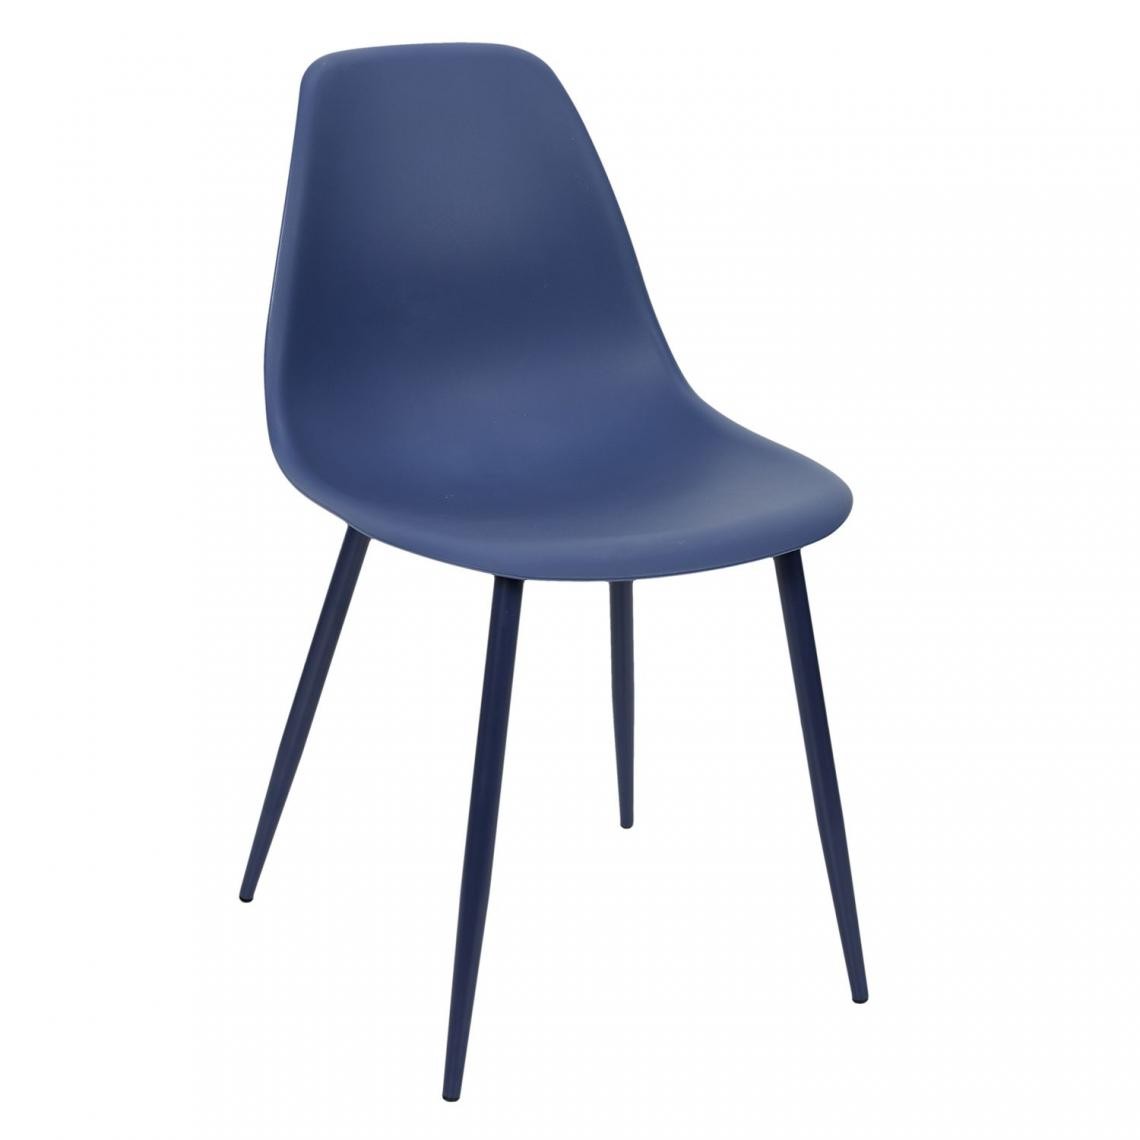 Toilinux - Chaise style scandinave Mila avec pieds en métal - Bleu - Chaises